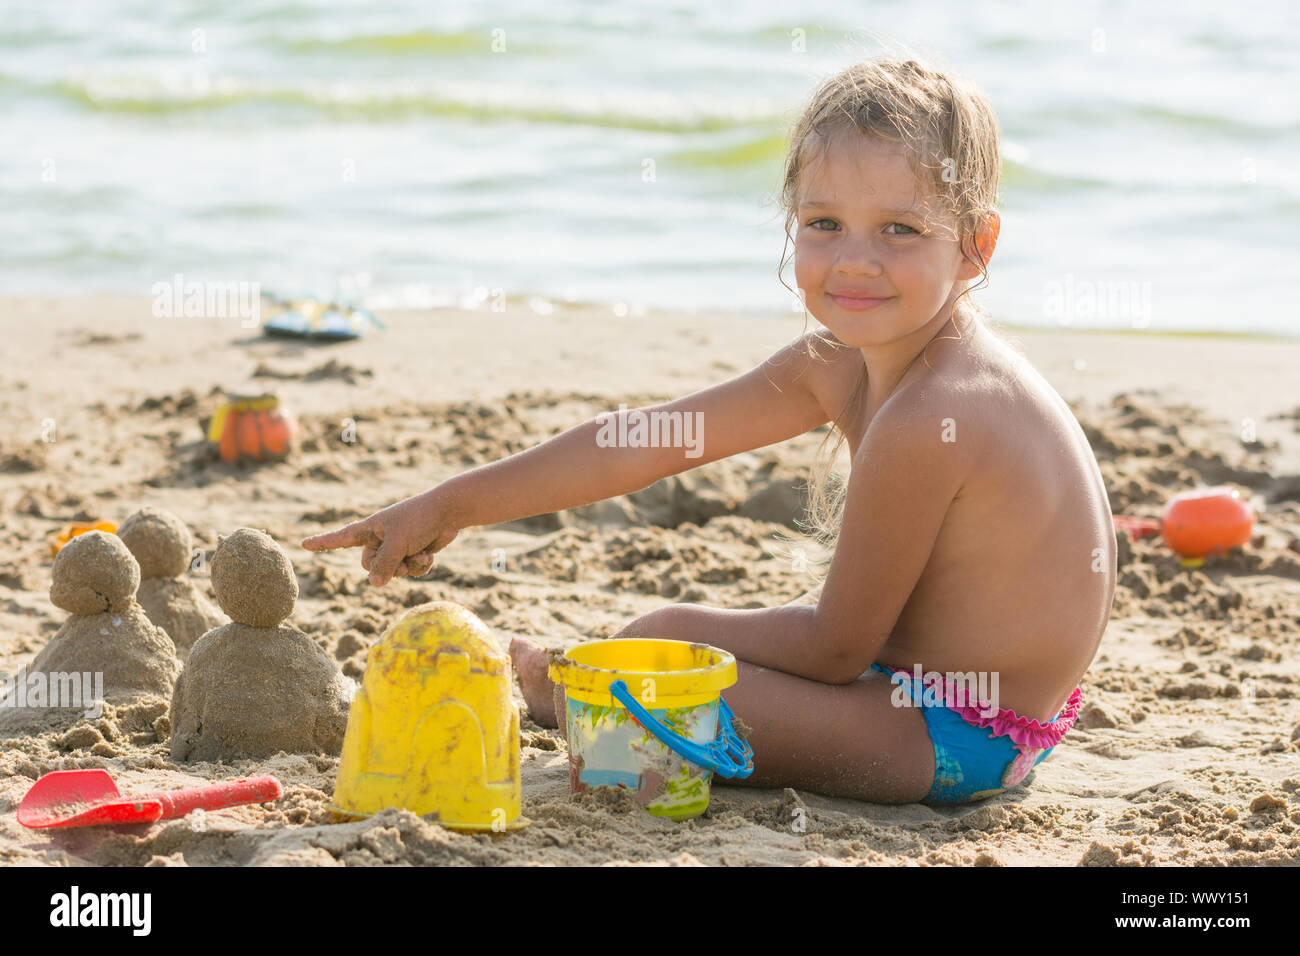 Zufrieden mit dem Kind auf einem sandigen Strand an den Wasser-Points im Kuchen von Sand eingestellt Stockfoto